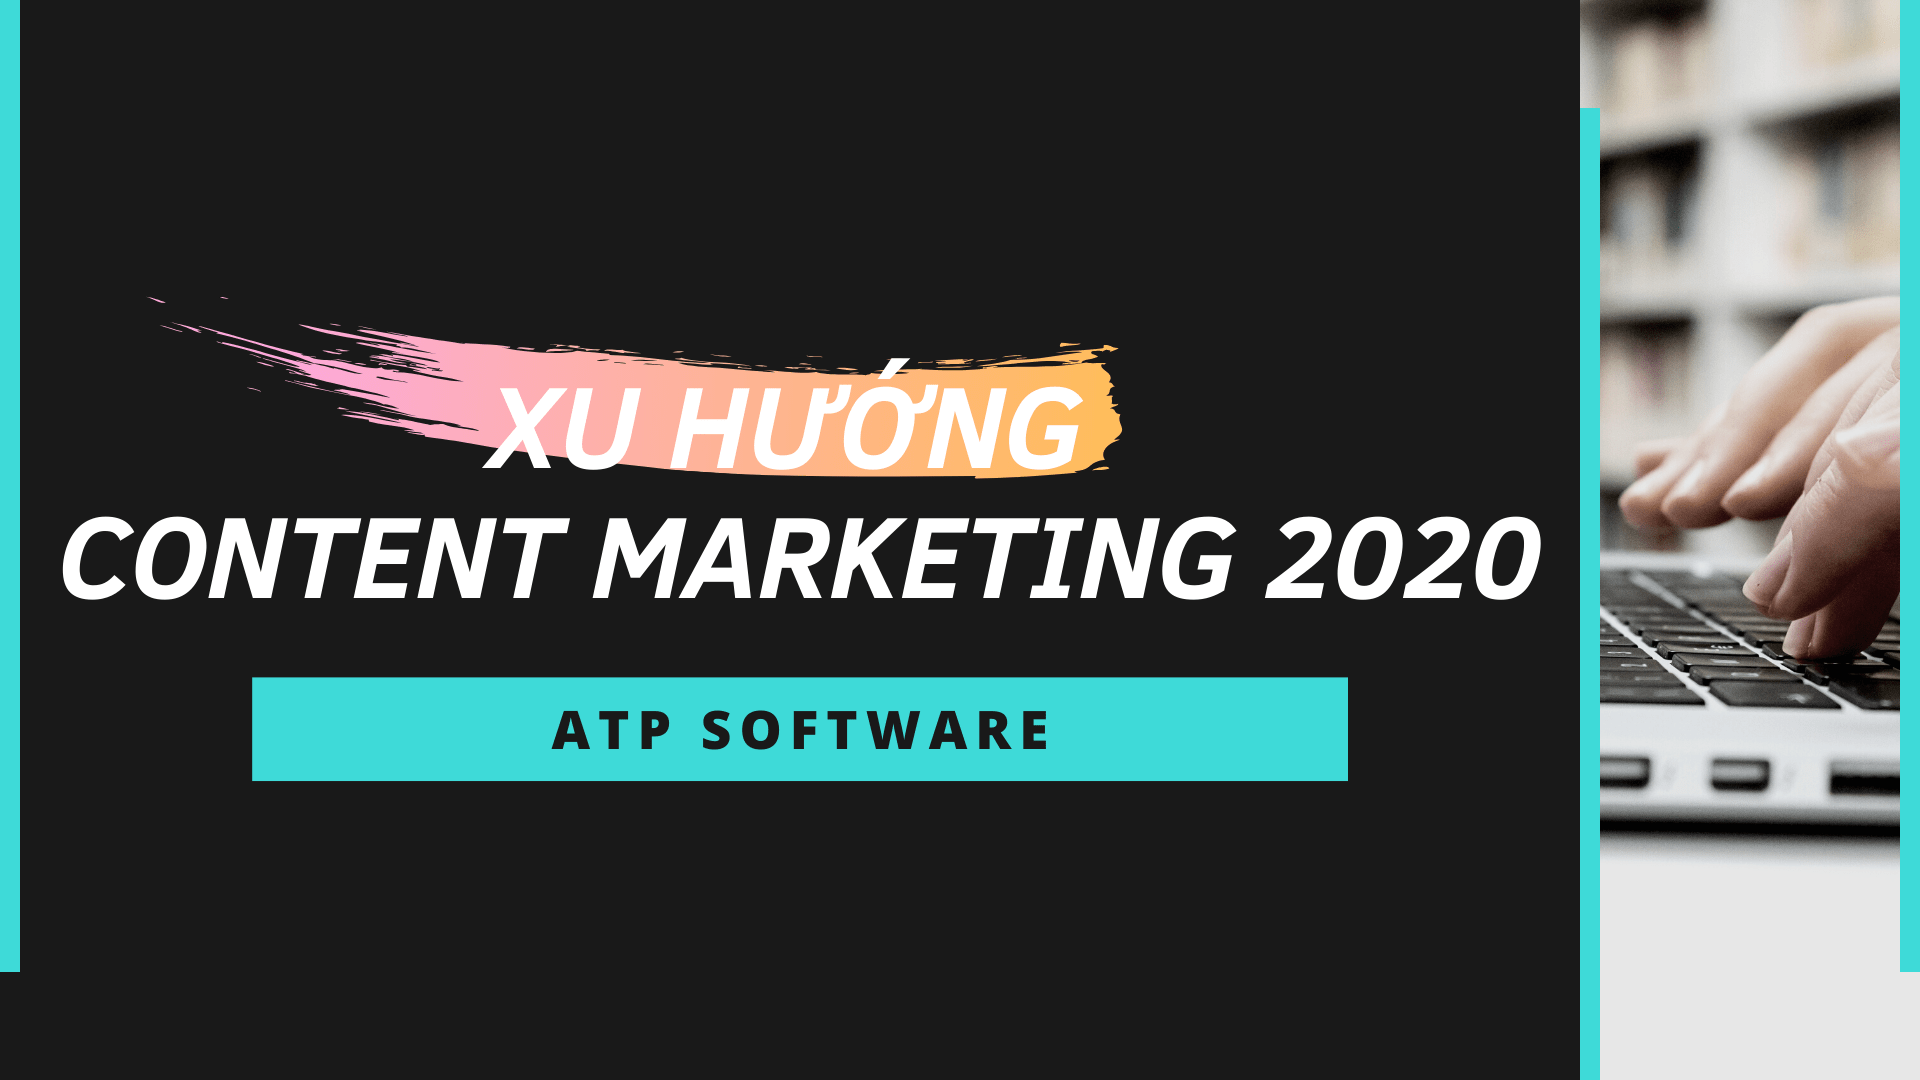 Xu hướng Content Marketing 2020